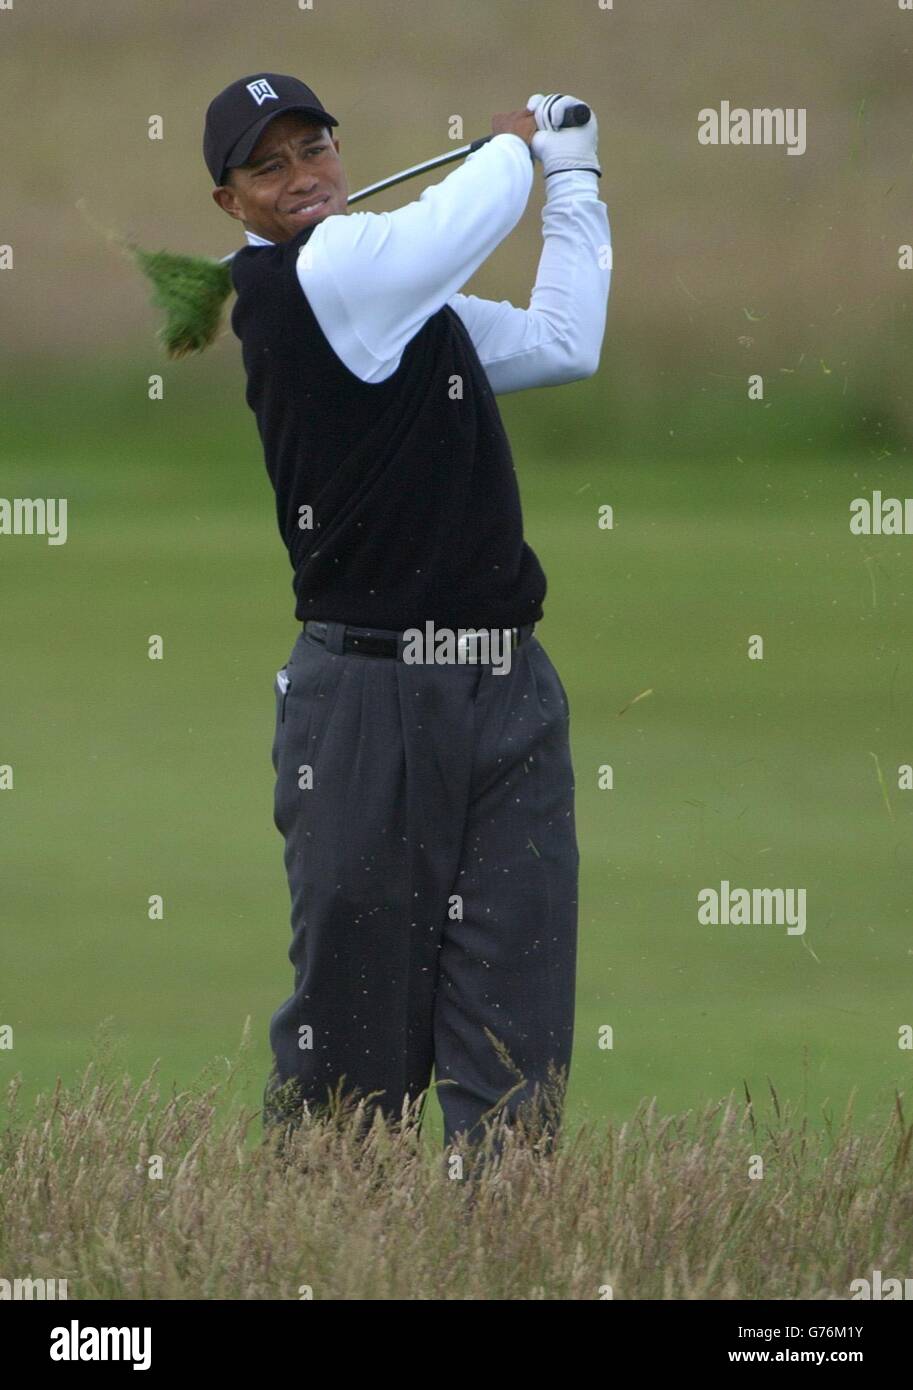 Le Tiger Woods des États-Unis joue hors de l'ébauche sur le 10ème trou, lors de la première partie du 131ème Open Championship, Muirfield, Écosse. Banque D'Images